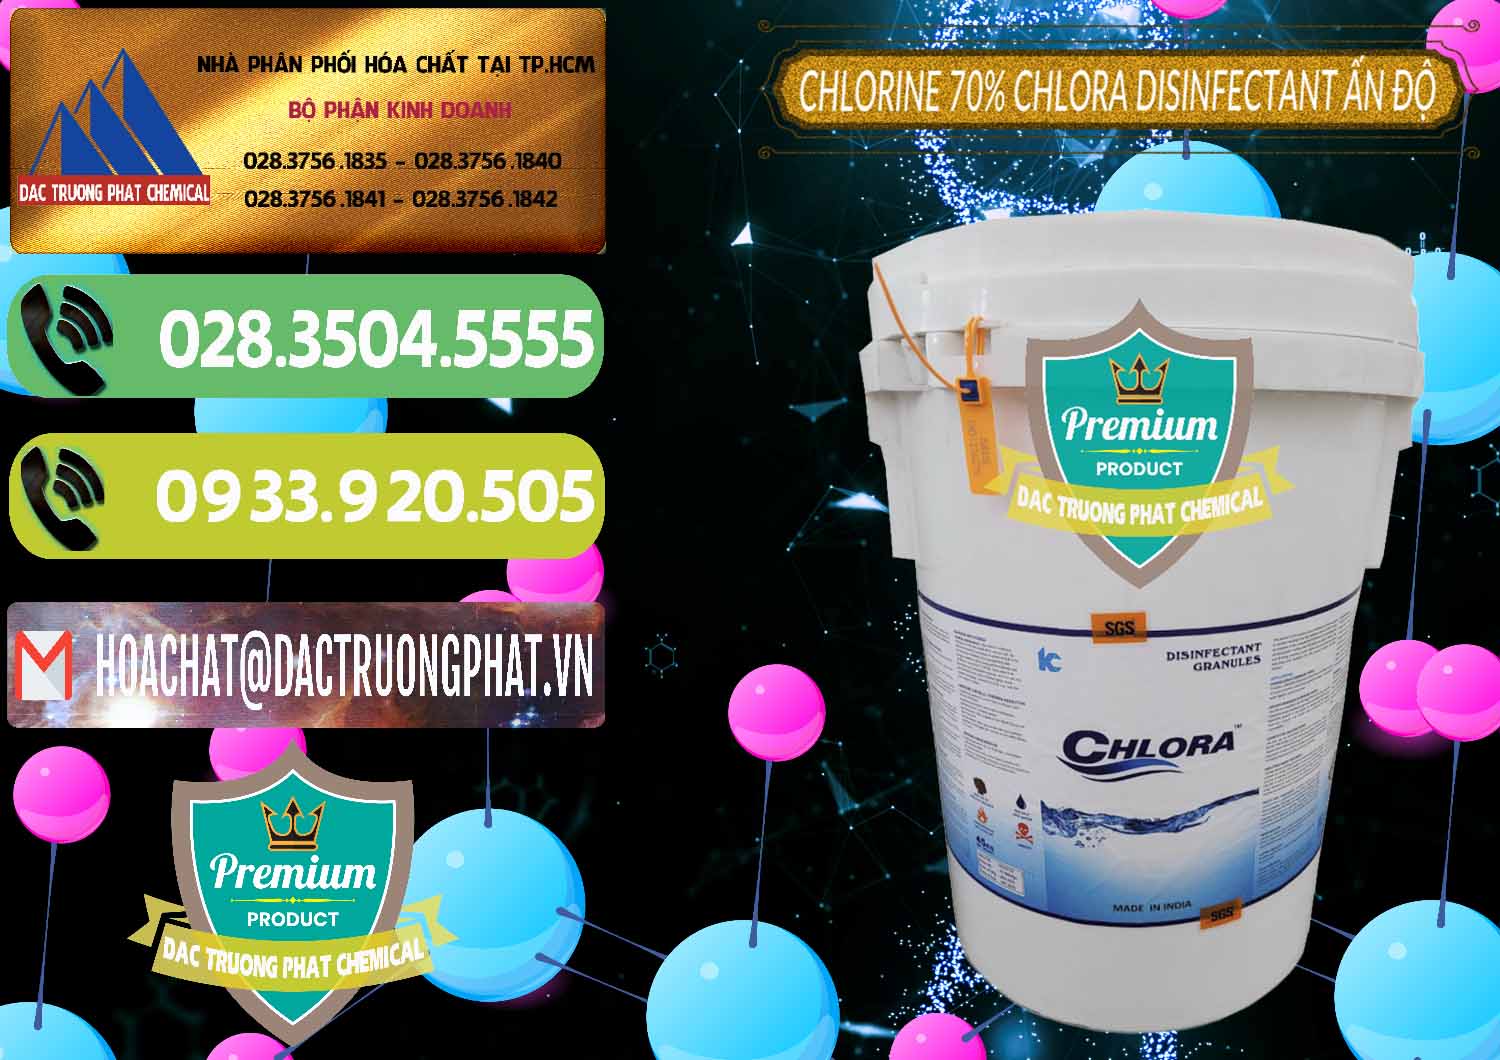 Nơi chuyên bán - cung cấp Chlorine – Clorin 70% Chlora Disinfectant Ấn Độ India - 0213 - Cty nhập khẩu _ cung cấp hóa chất tại TP.HCM - hoachatmientay.vn